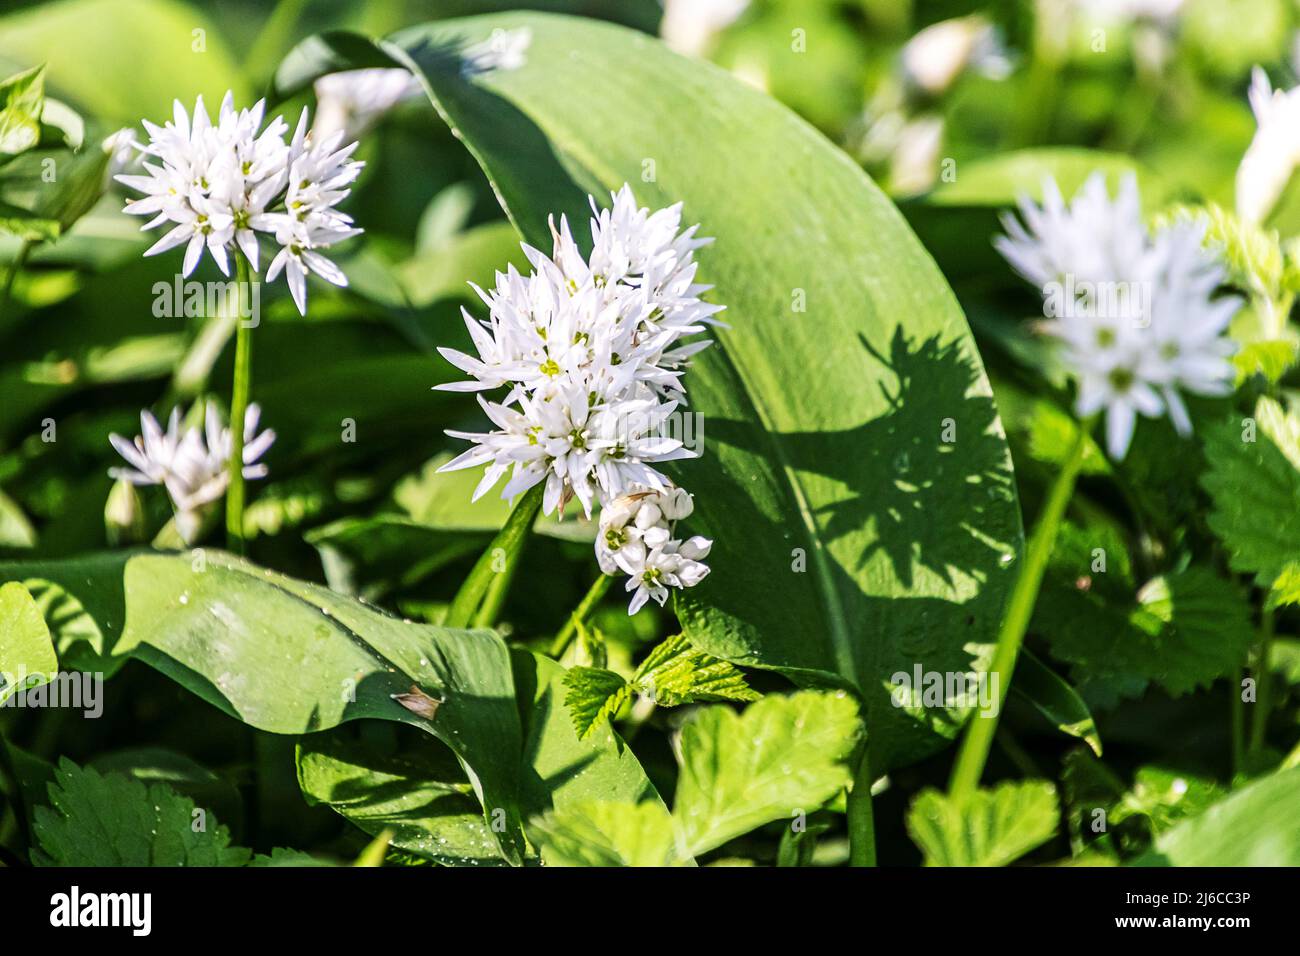 Flowering ramsons in spring. Allium ursinum also known as wild garlic, bear garlic, buckrams or wood garlic. Stock Photo